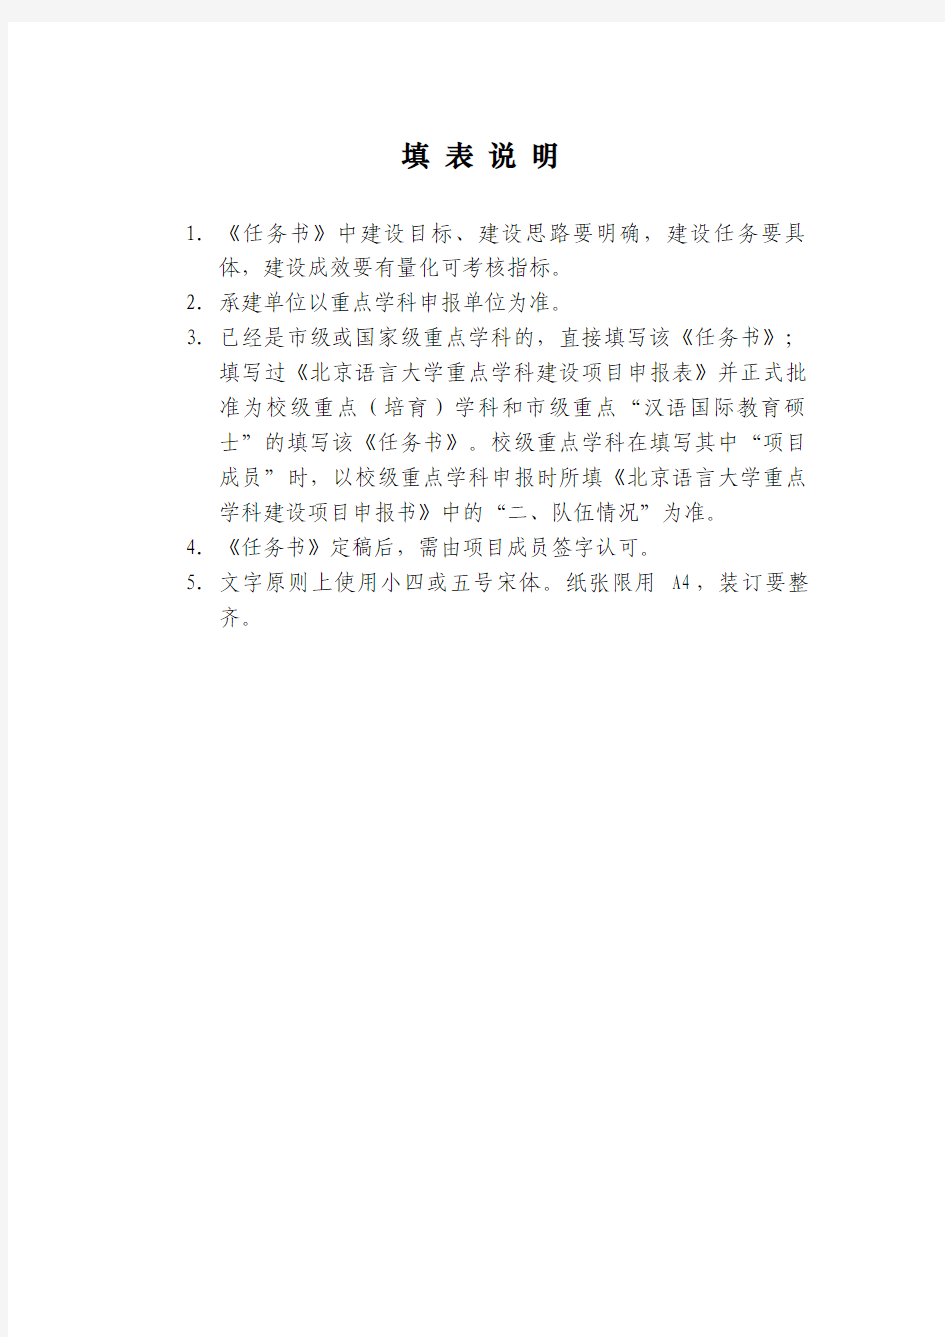 北京语言大学 重点学科建设项目任务书